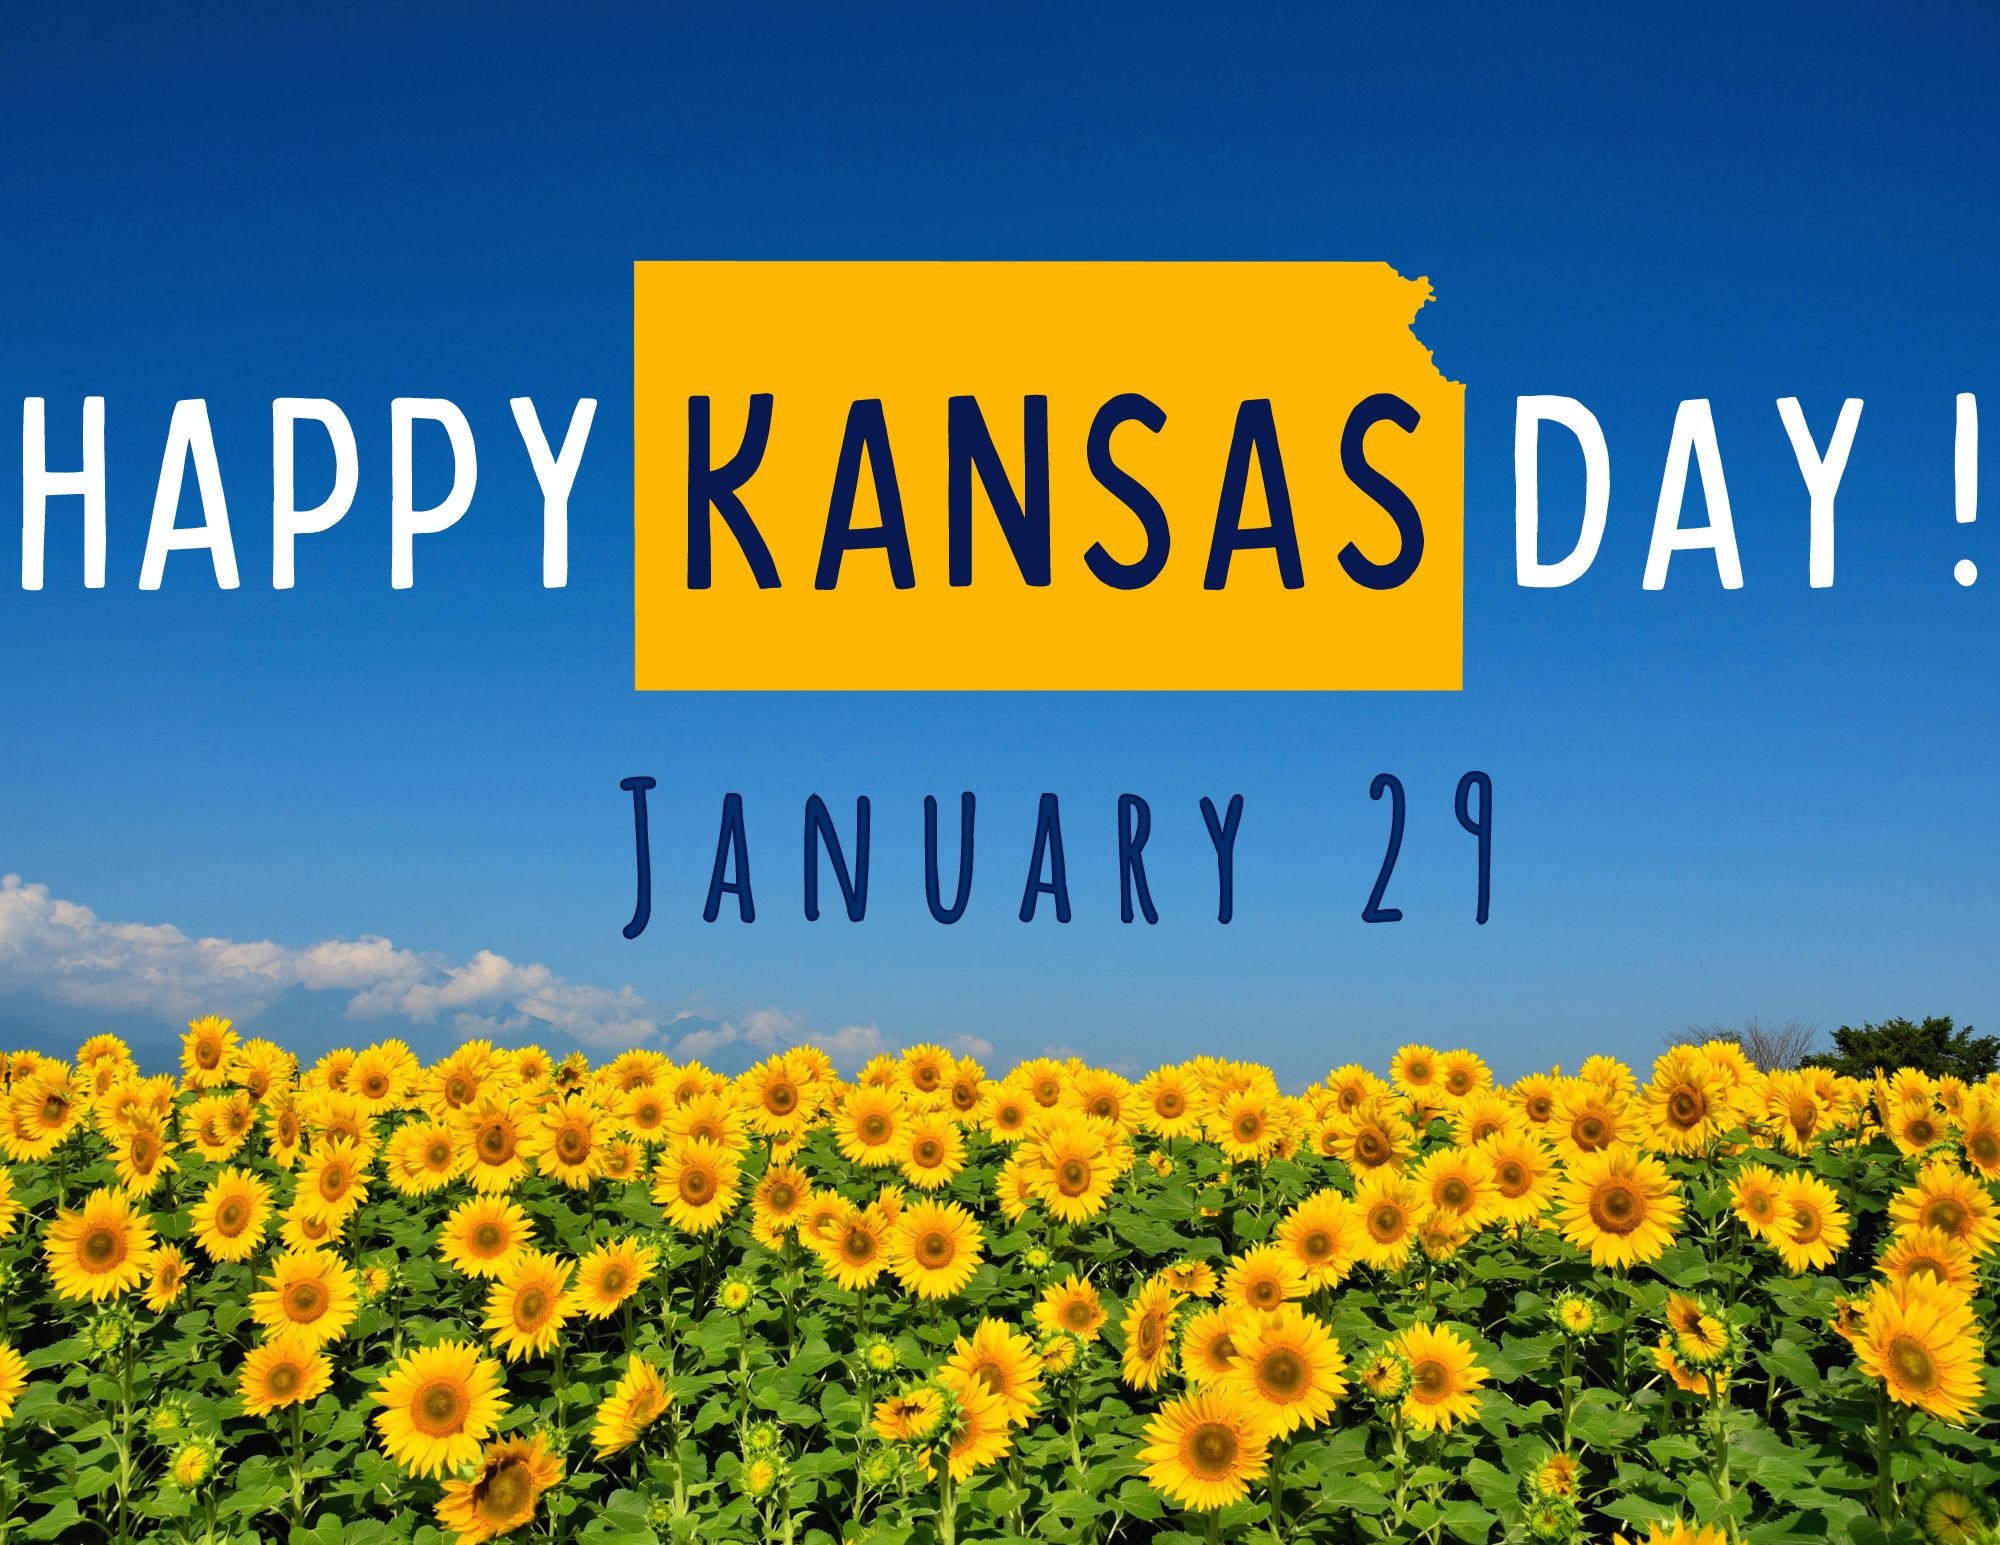 Happy Kansas Day! January 29th. 